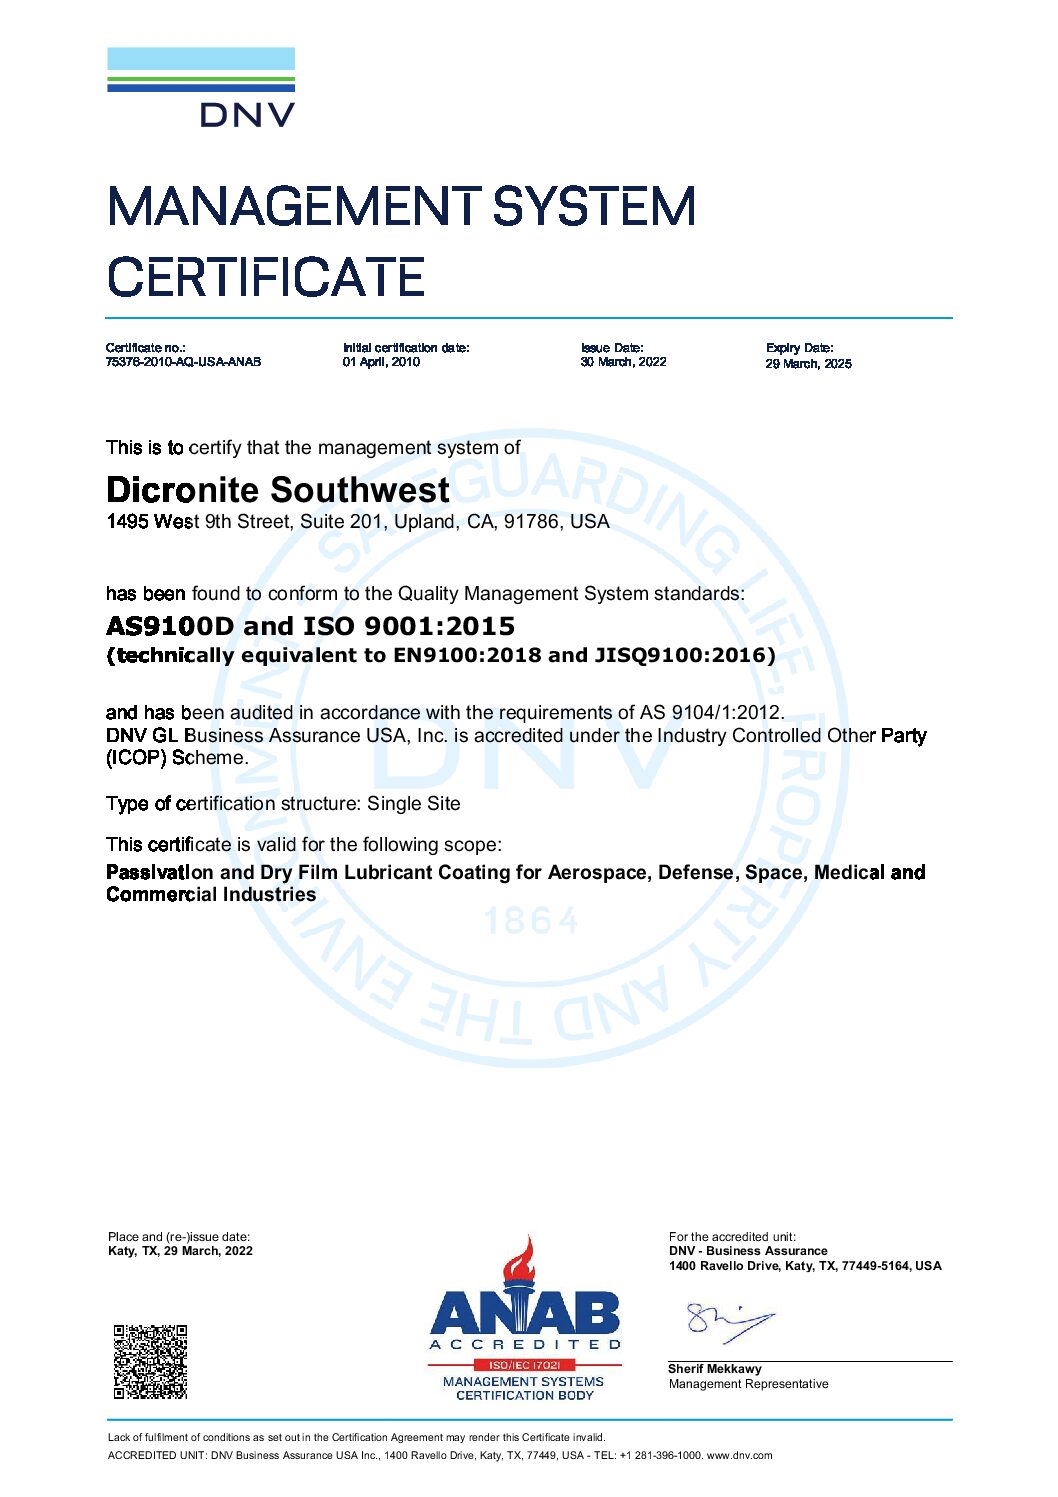 DNV Management System Certificate